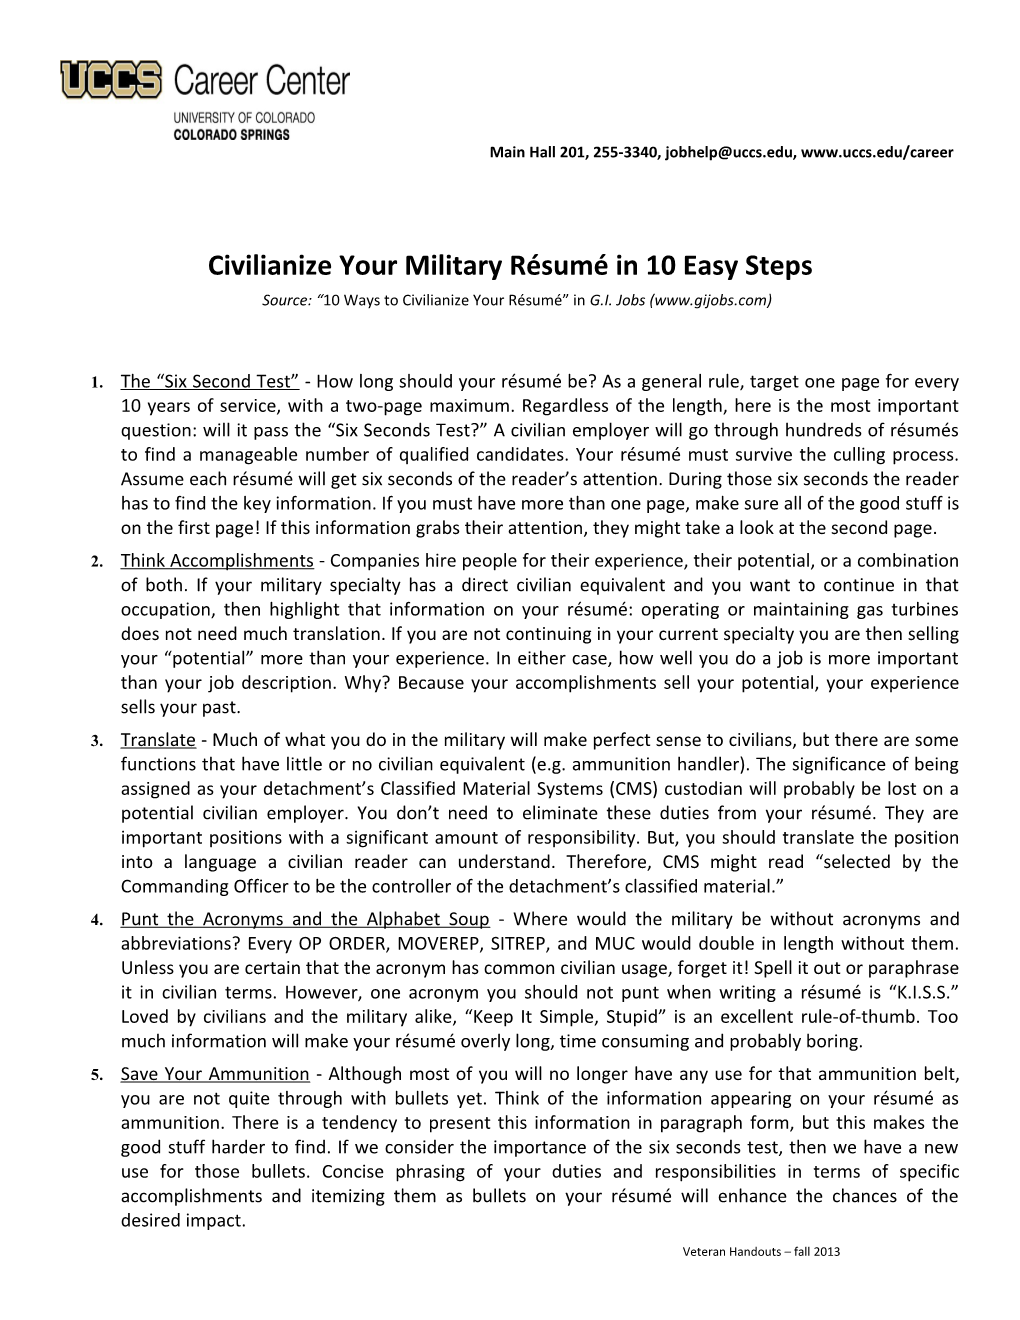 Civilianize Your Military Résumé in 10 Easy Steps